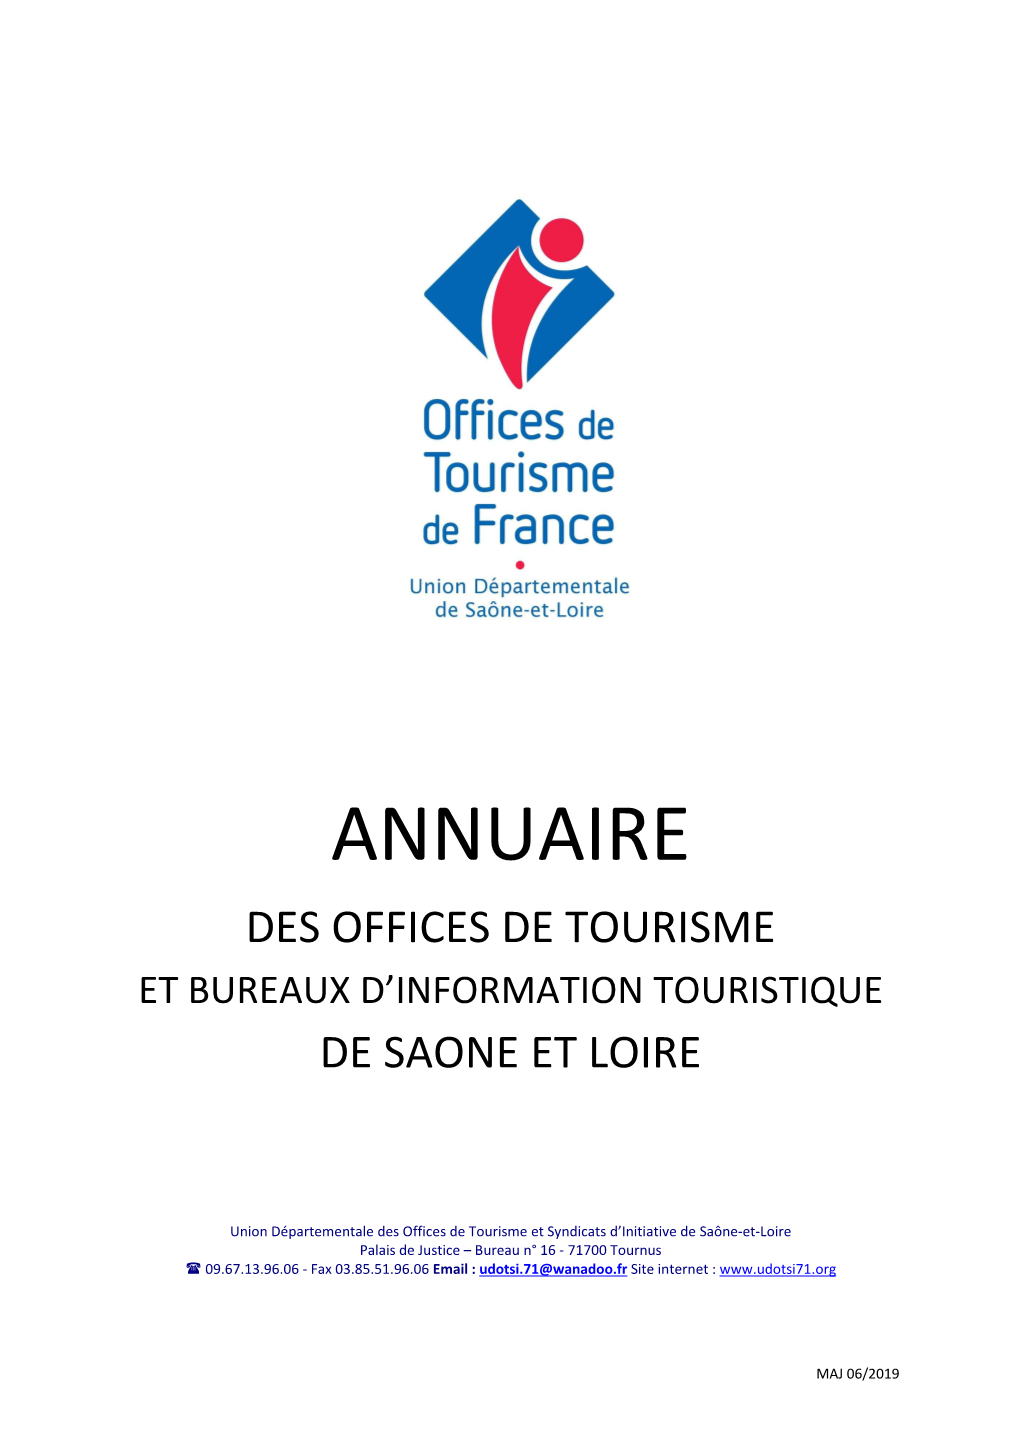 Des Offices De Tourisme Et Bureaux D’Information Touristique De Saone Et Loire